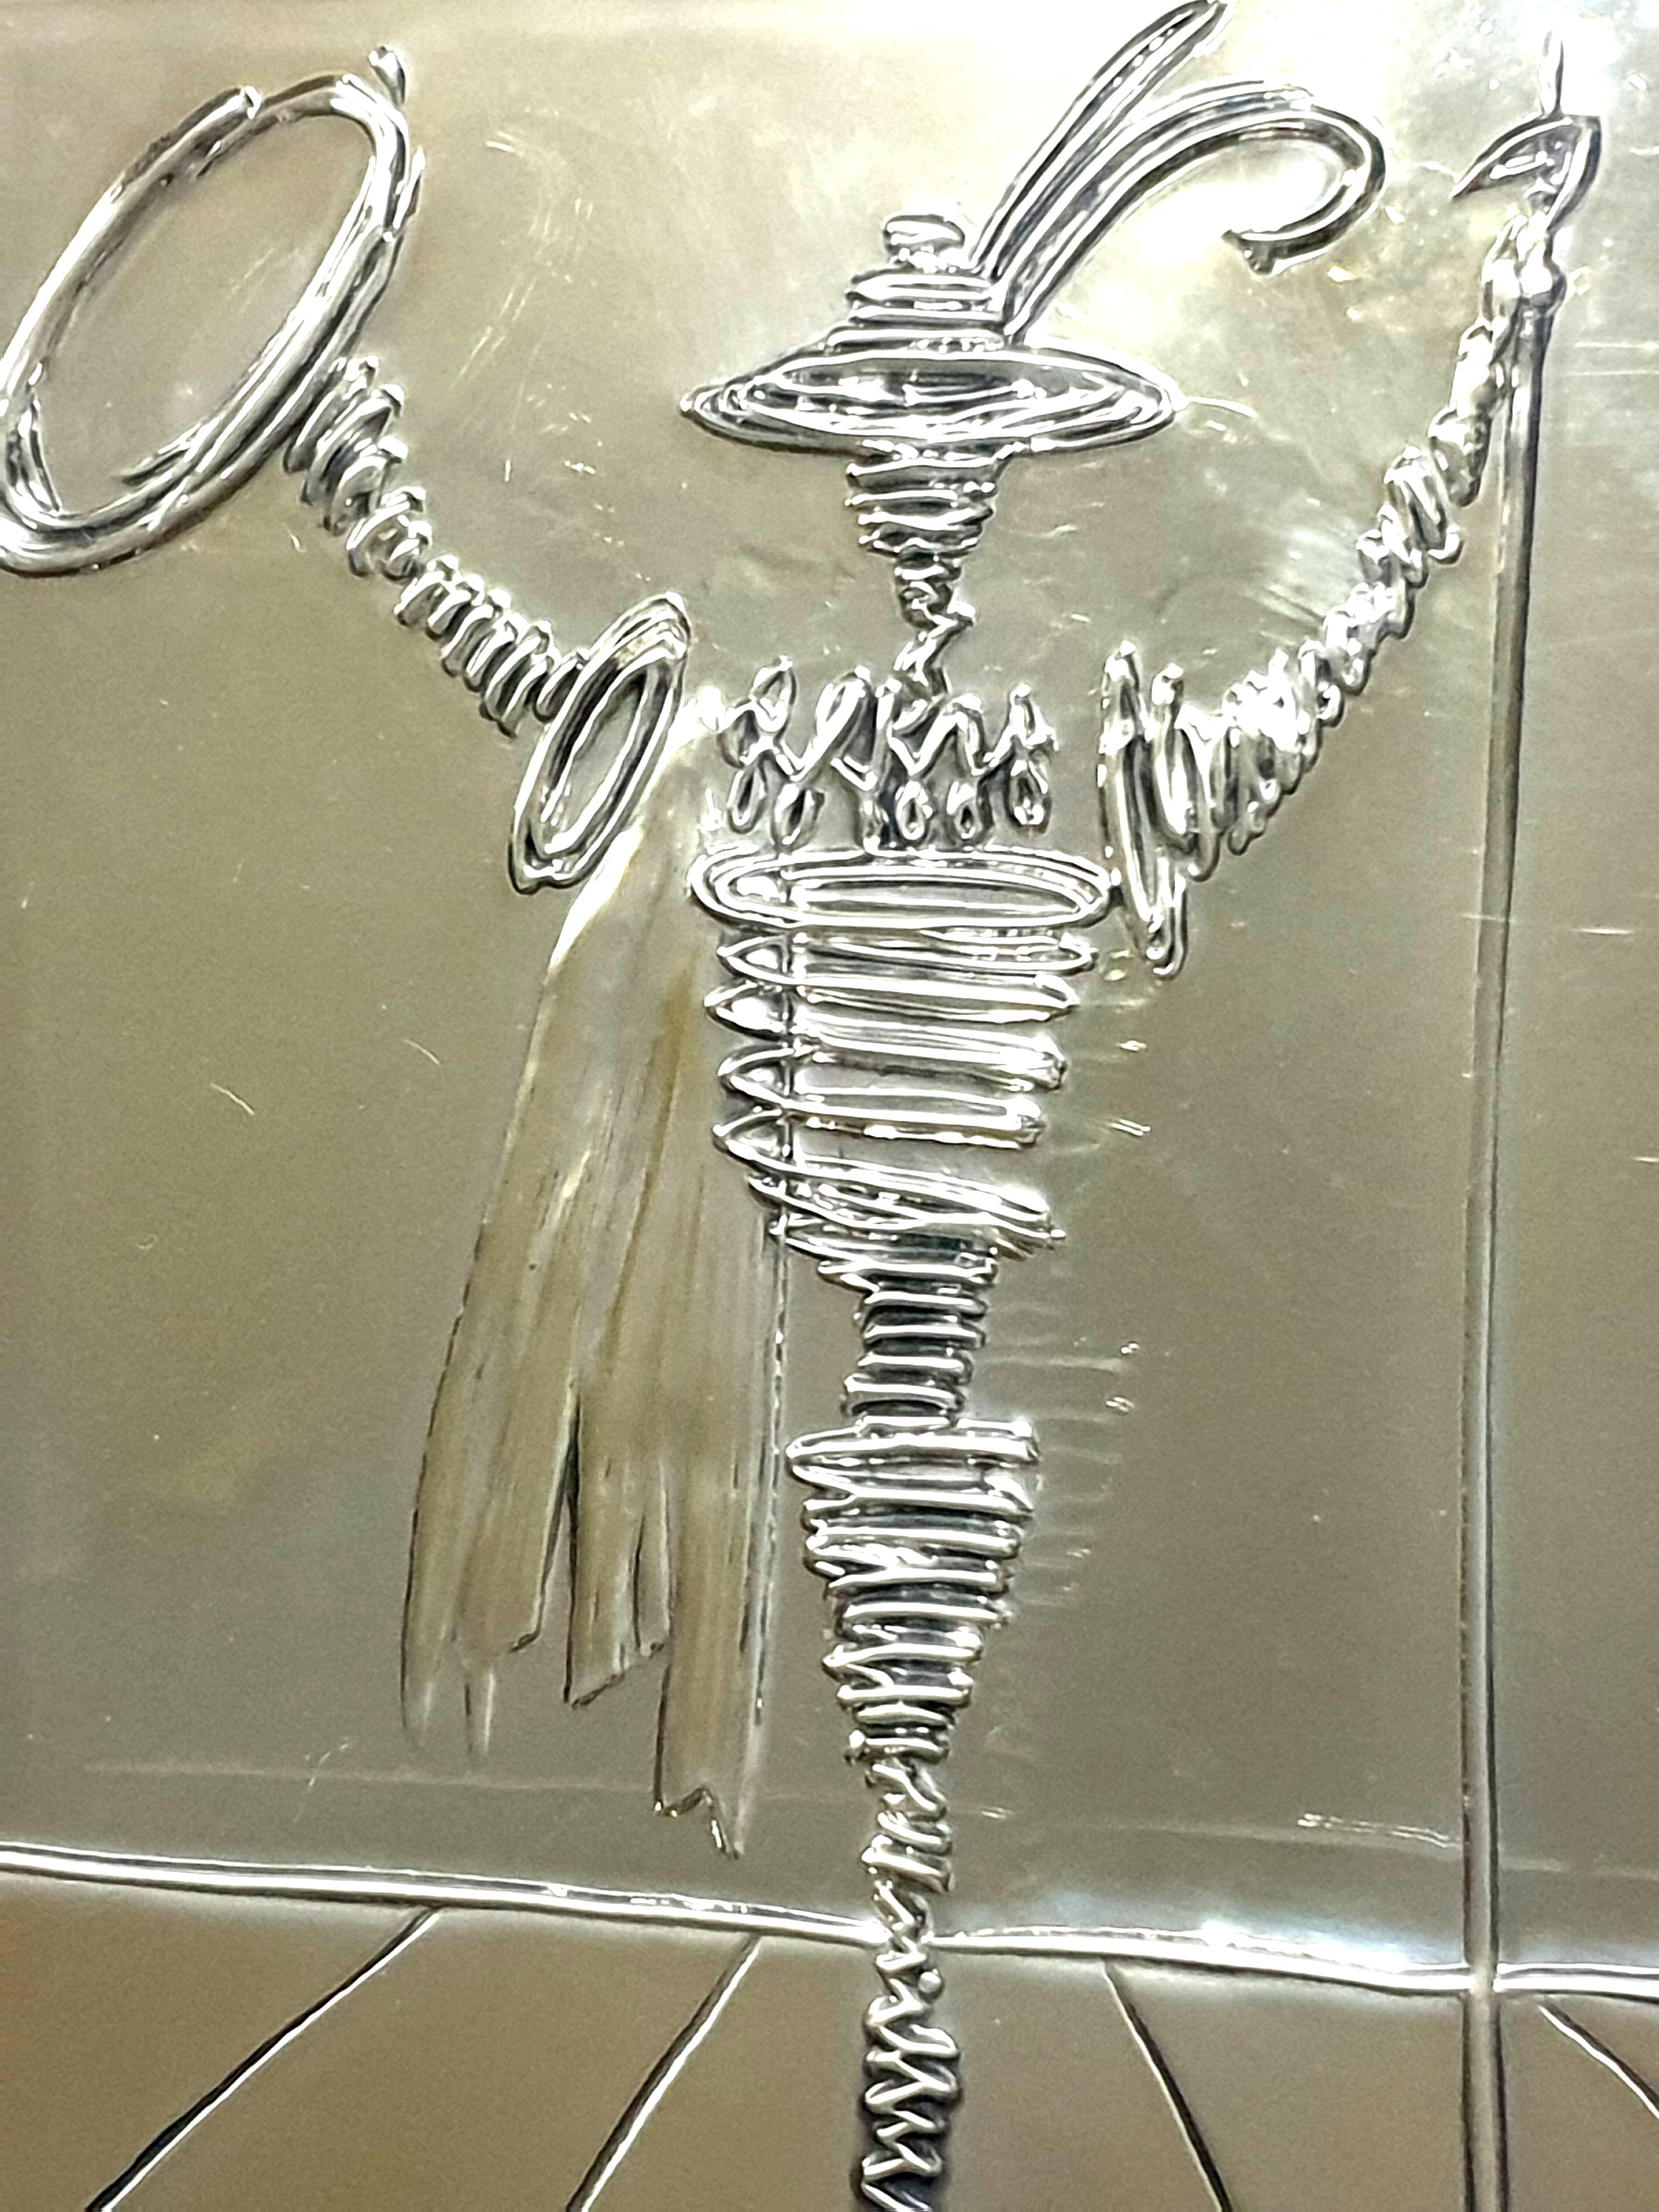 Salvador Dali – Spanischer Ritter – Flachrelief Silberskulptur
Signiert auf dem Basrelief und gedruckte Signatur auf dem Zertifikat auf der Rückseite. 
Abmessungen: 22 x 17::5 cm
Gerahmt: 38 x 33 cm
Diese Plakette in limitierter Auflage wurde auf